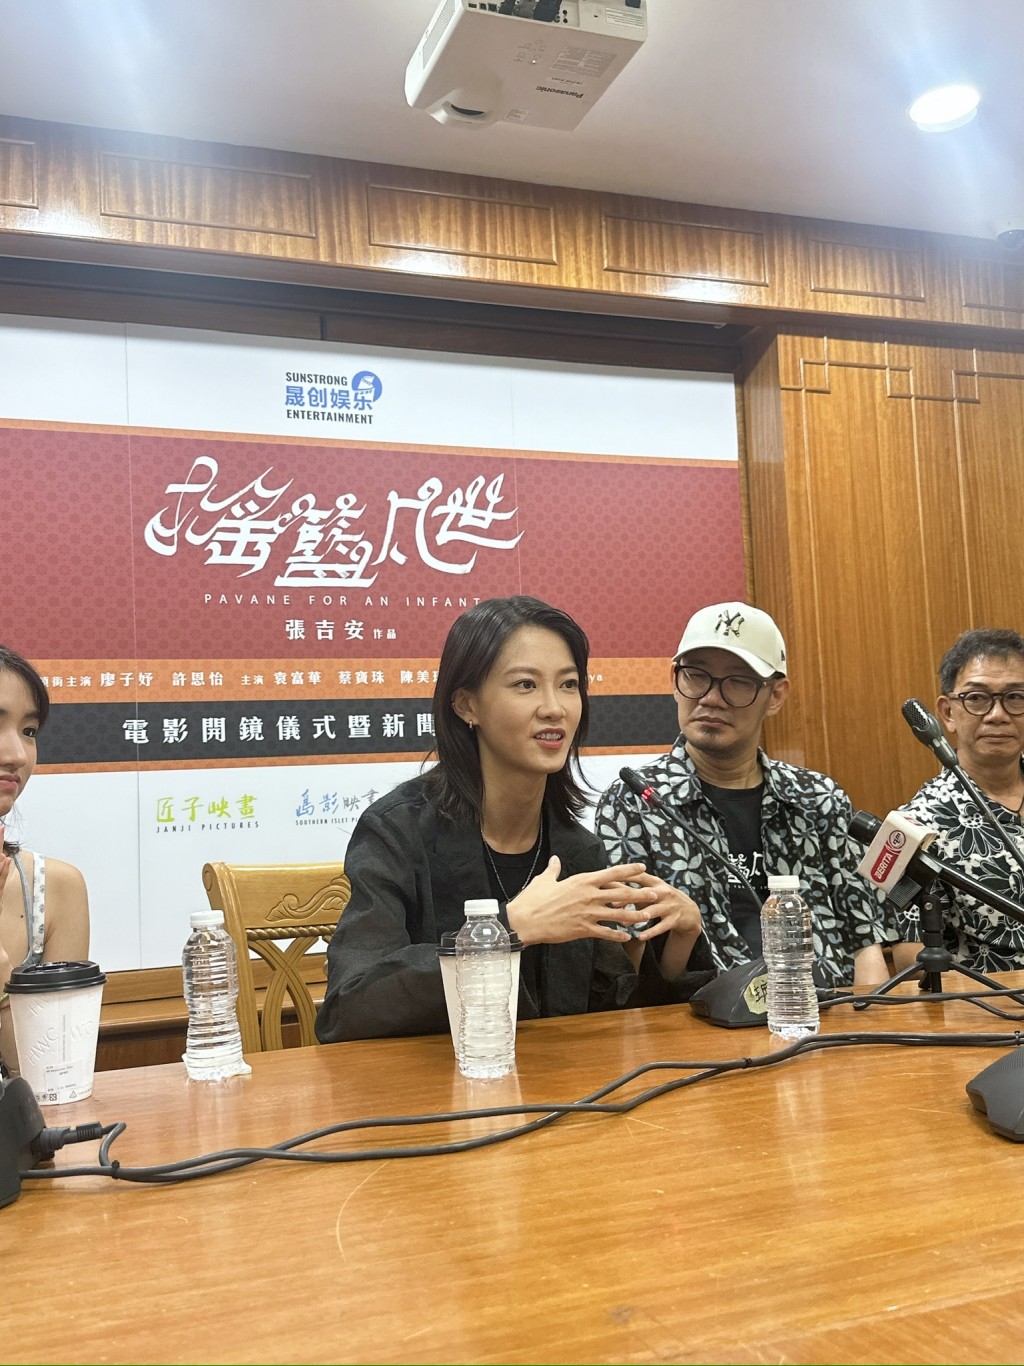 廖子妤拍攝由金馬獎最佳新導演張吉安執導的新片《搖籃凡世》。